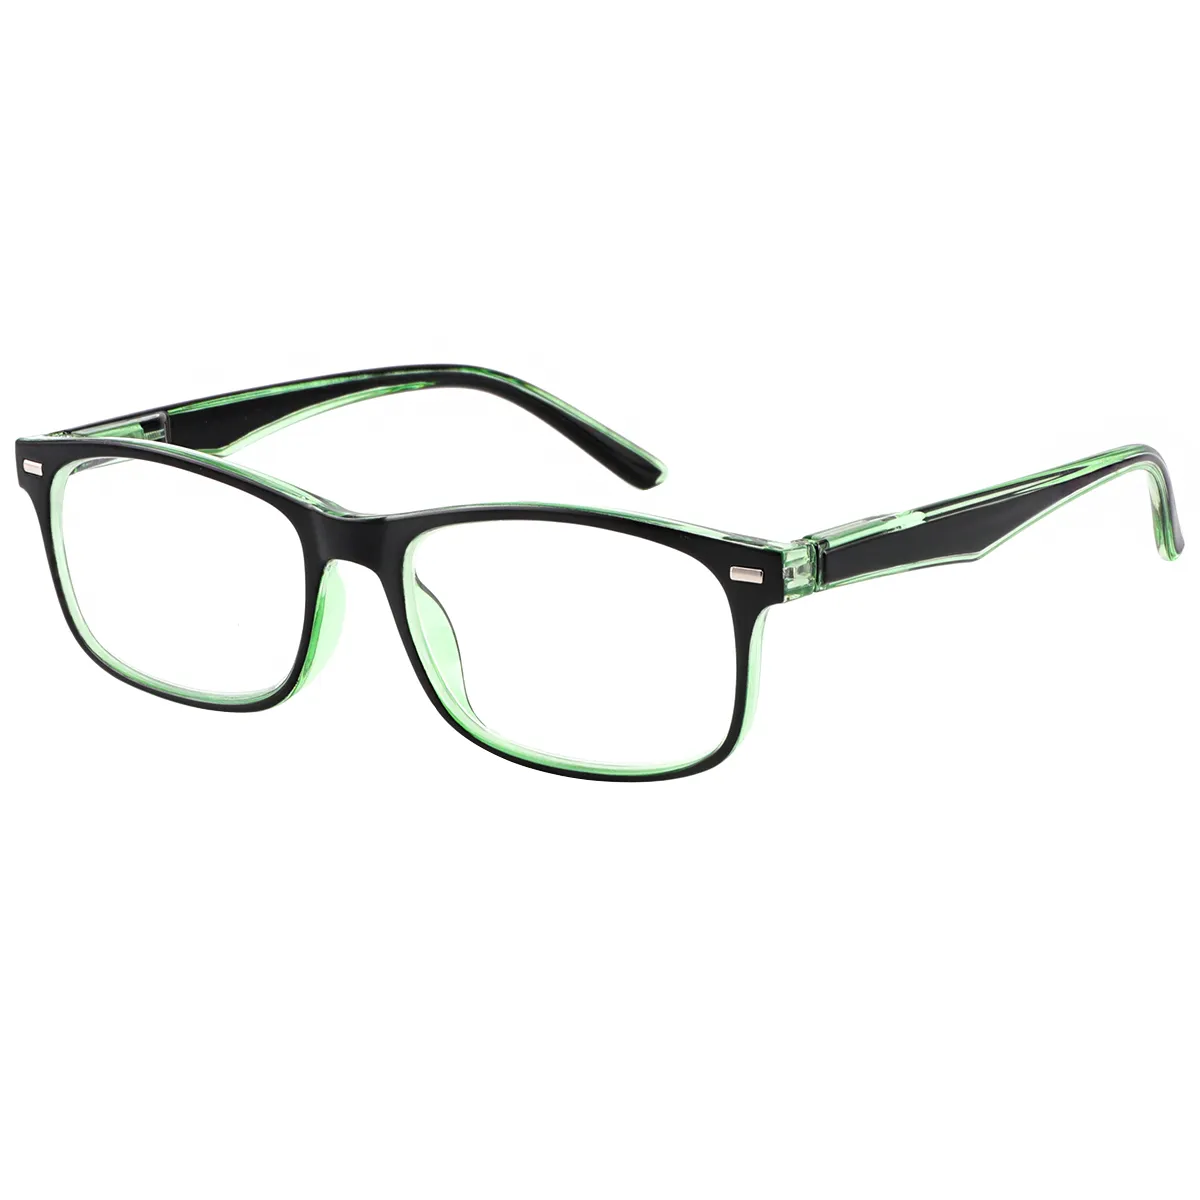 Fashion Rectangle Green Reading Glasses for Men & Women